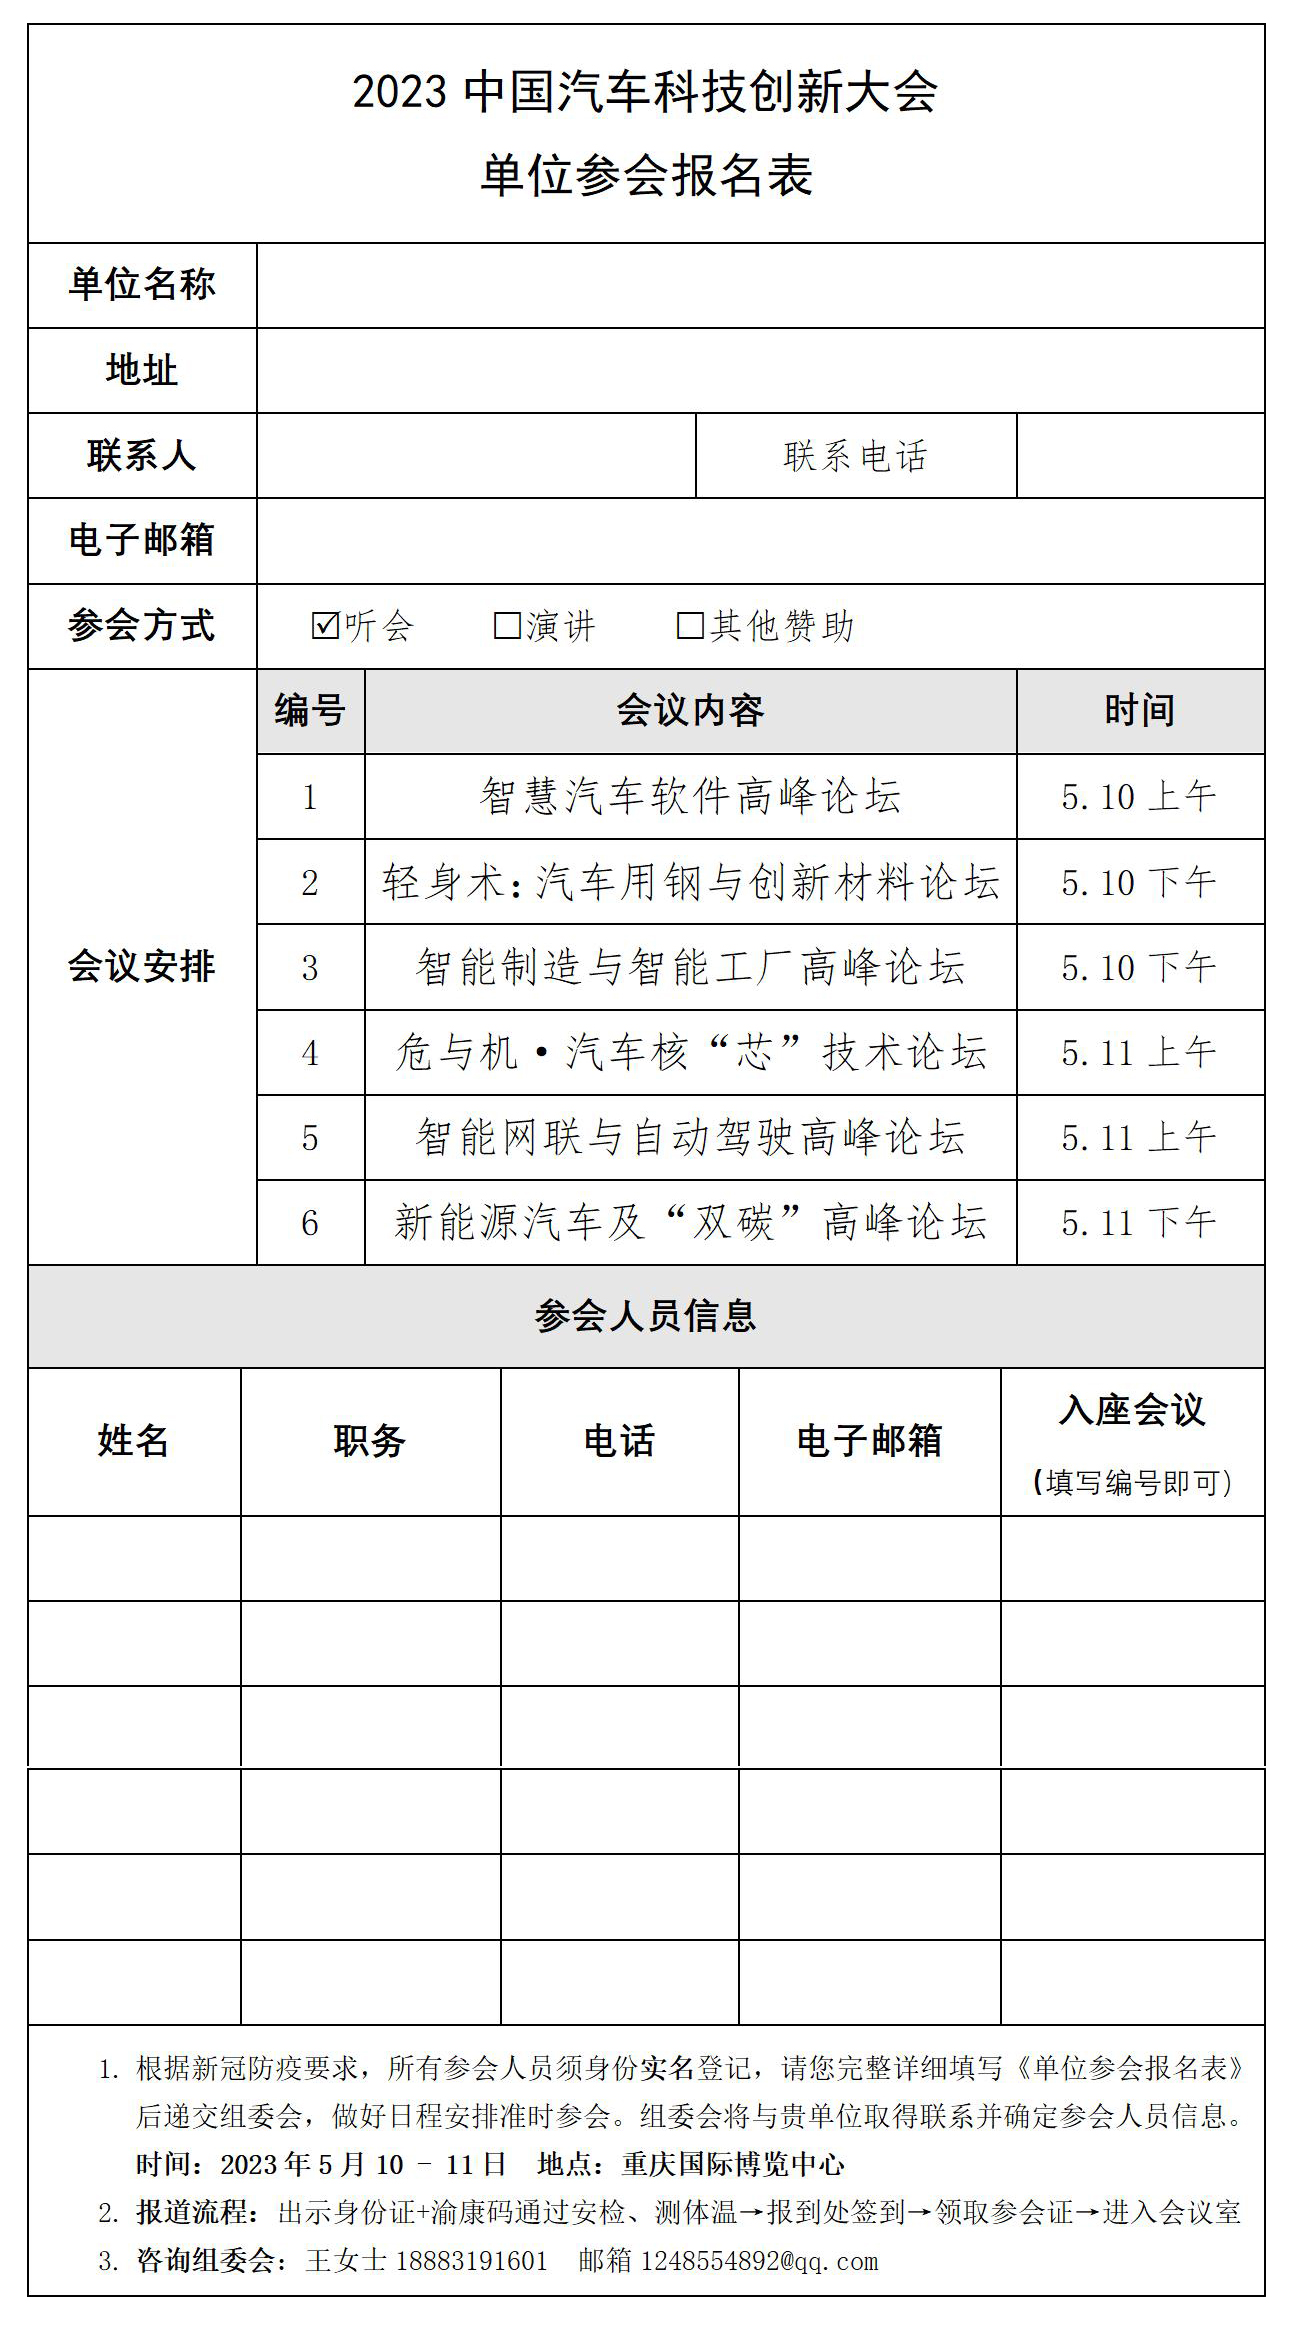 2023中国汽车科技创新大会-单位参会报名表_01.jpg